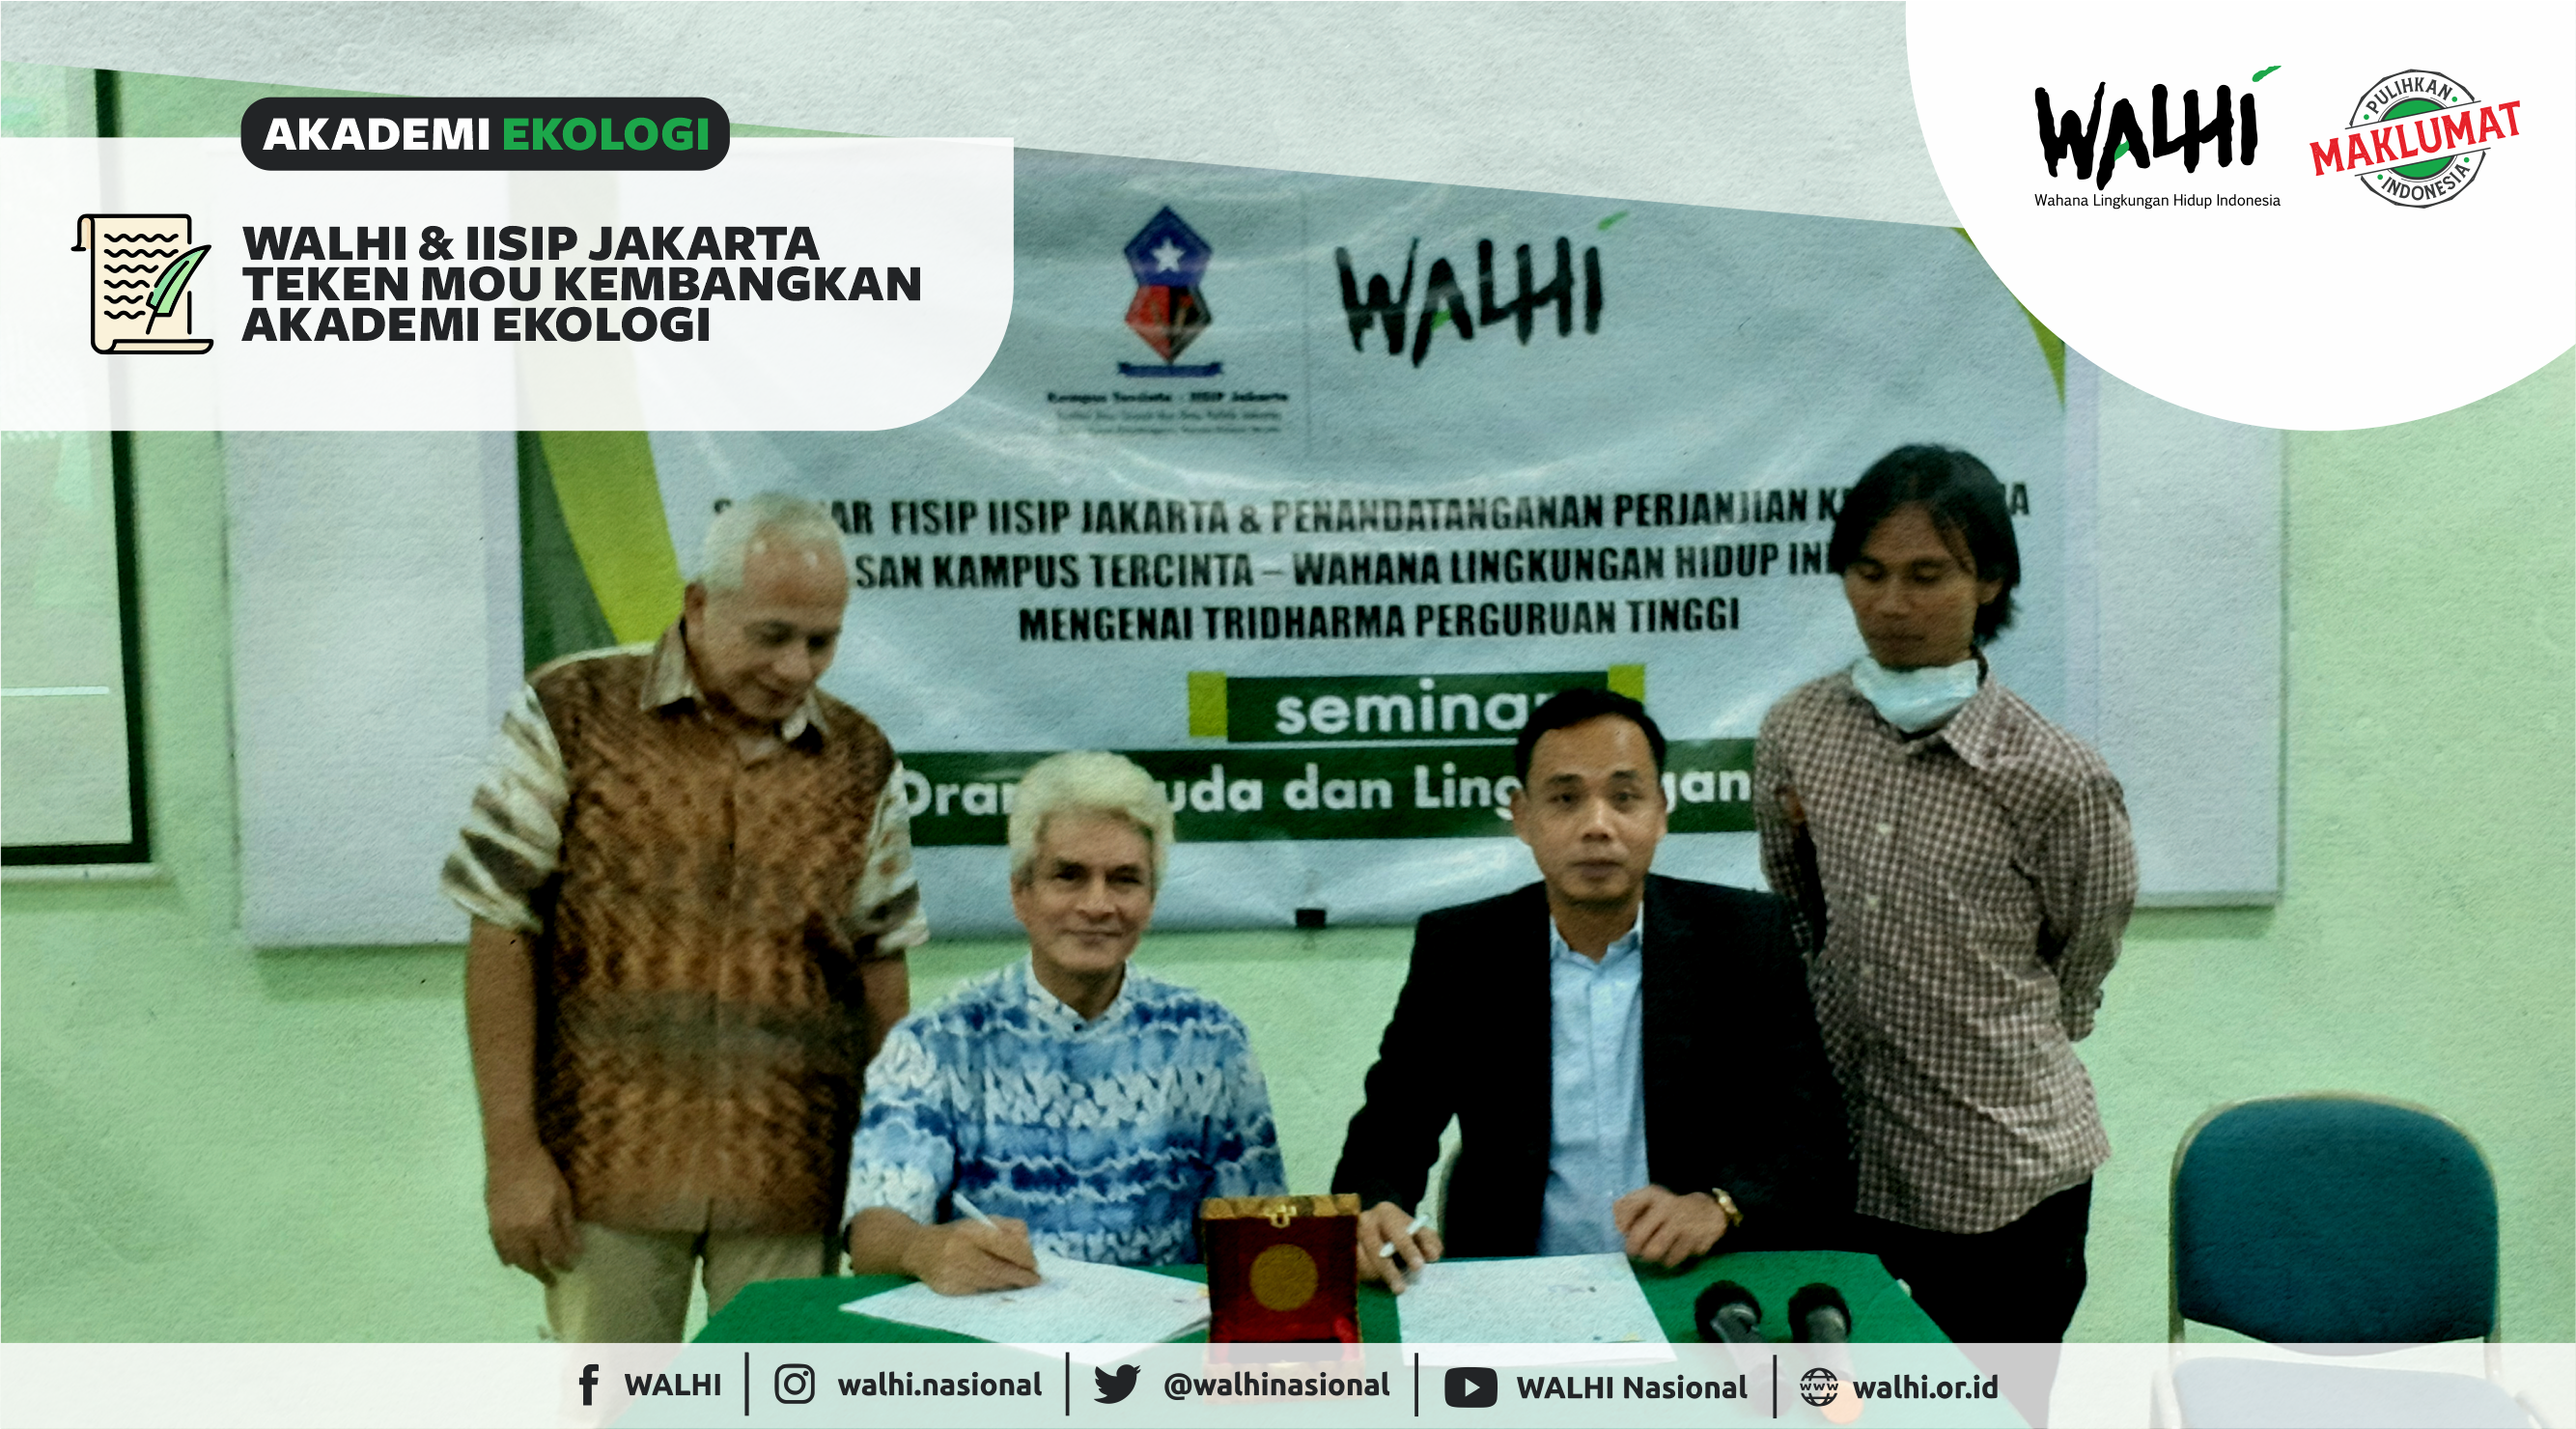 Walhi dan IISIP Jakarta Kerjasama Kembangkan Akademi Ekologi